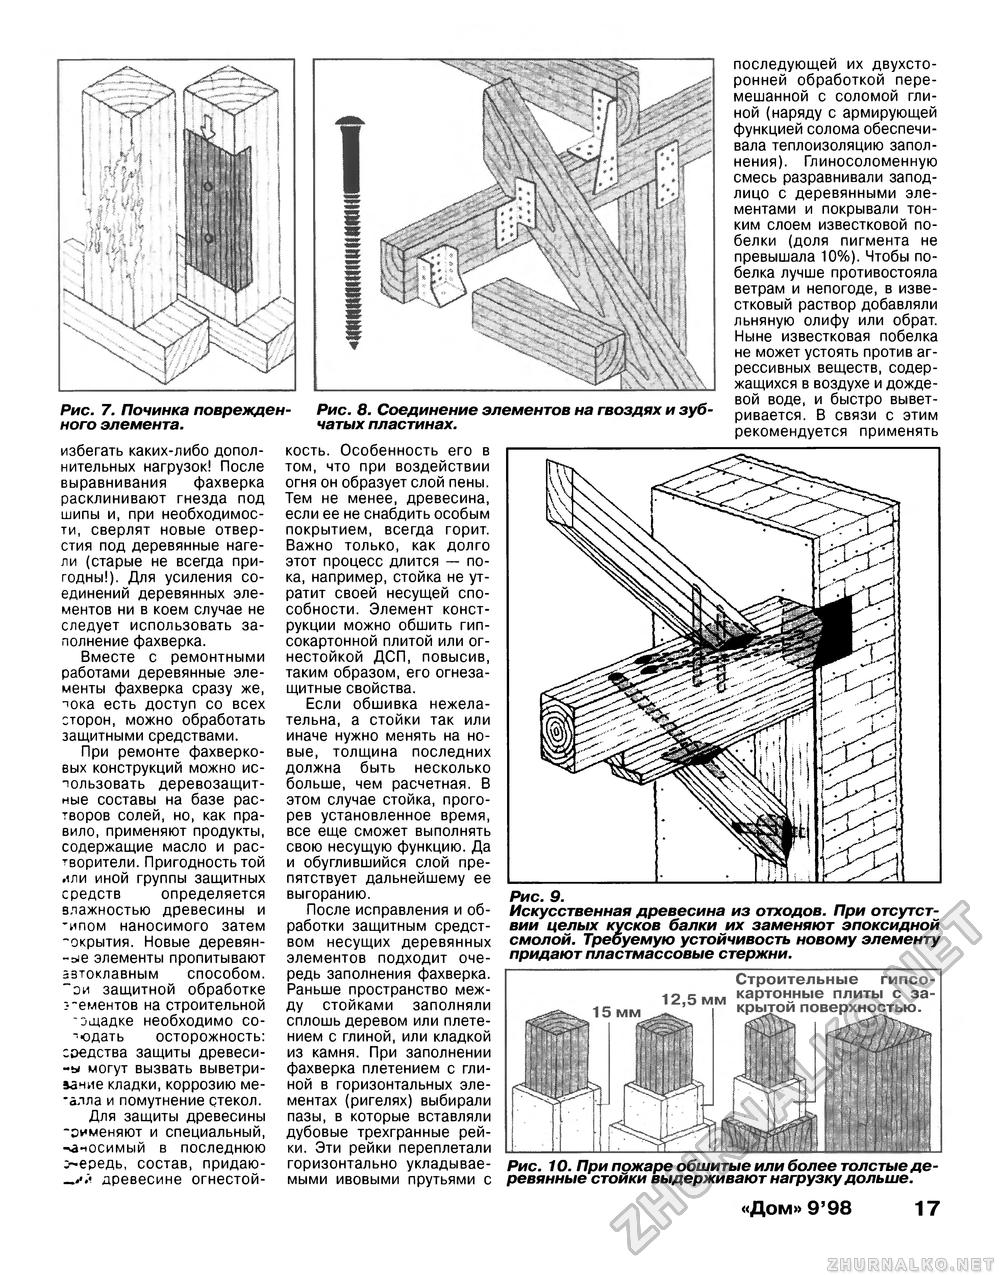 Дом 1998-09, страница 17